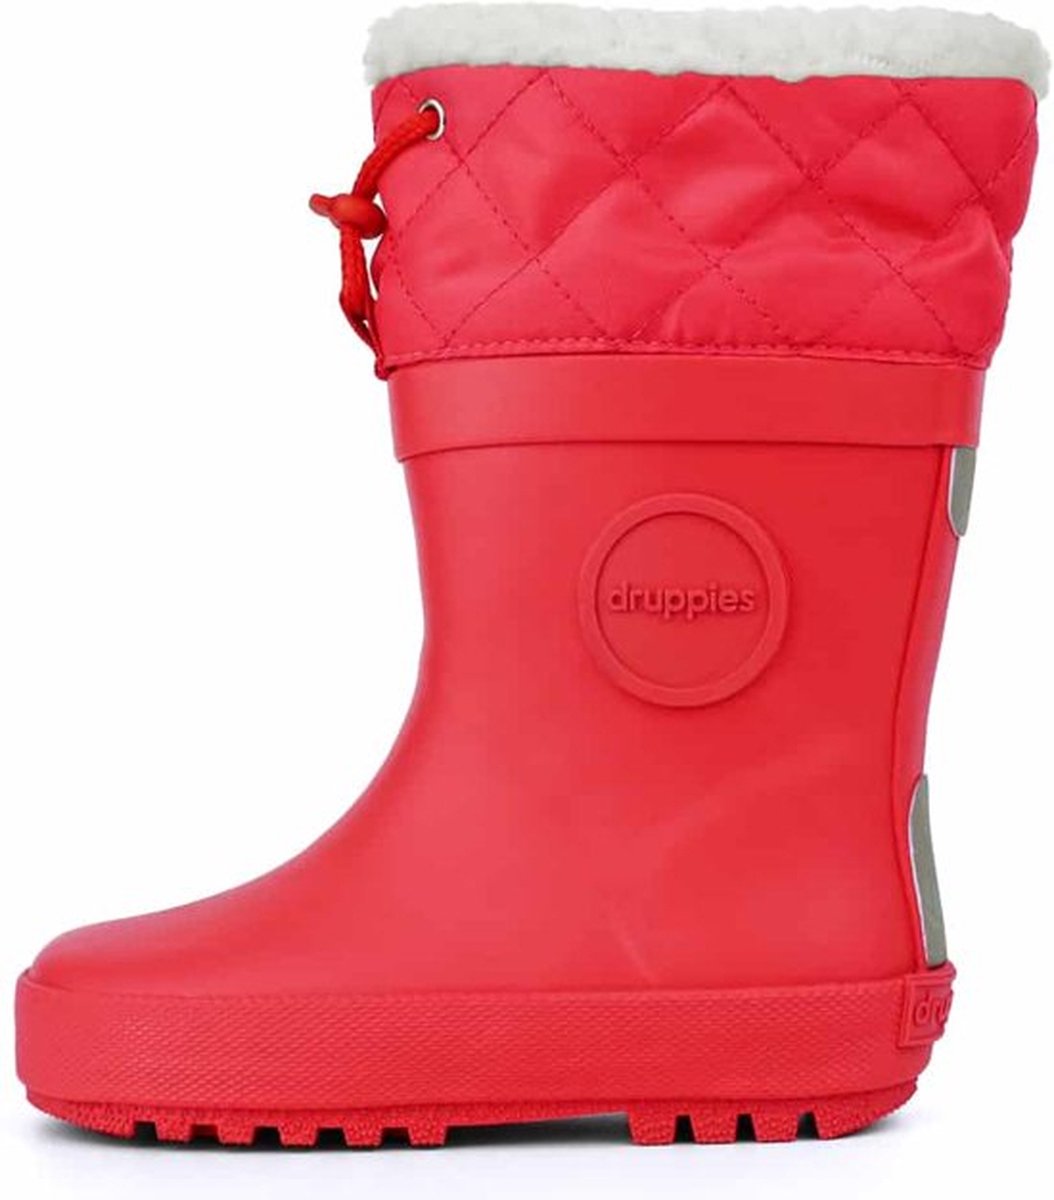 Druppies Regenlaarzen Gevoerd - Winter Boot - Roze - Maat 33